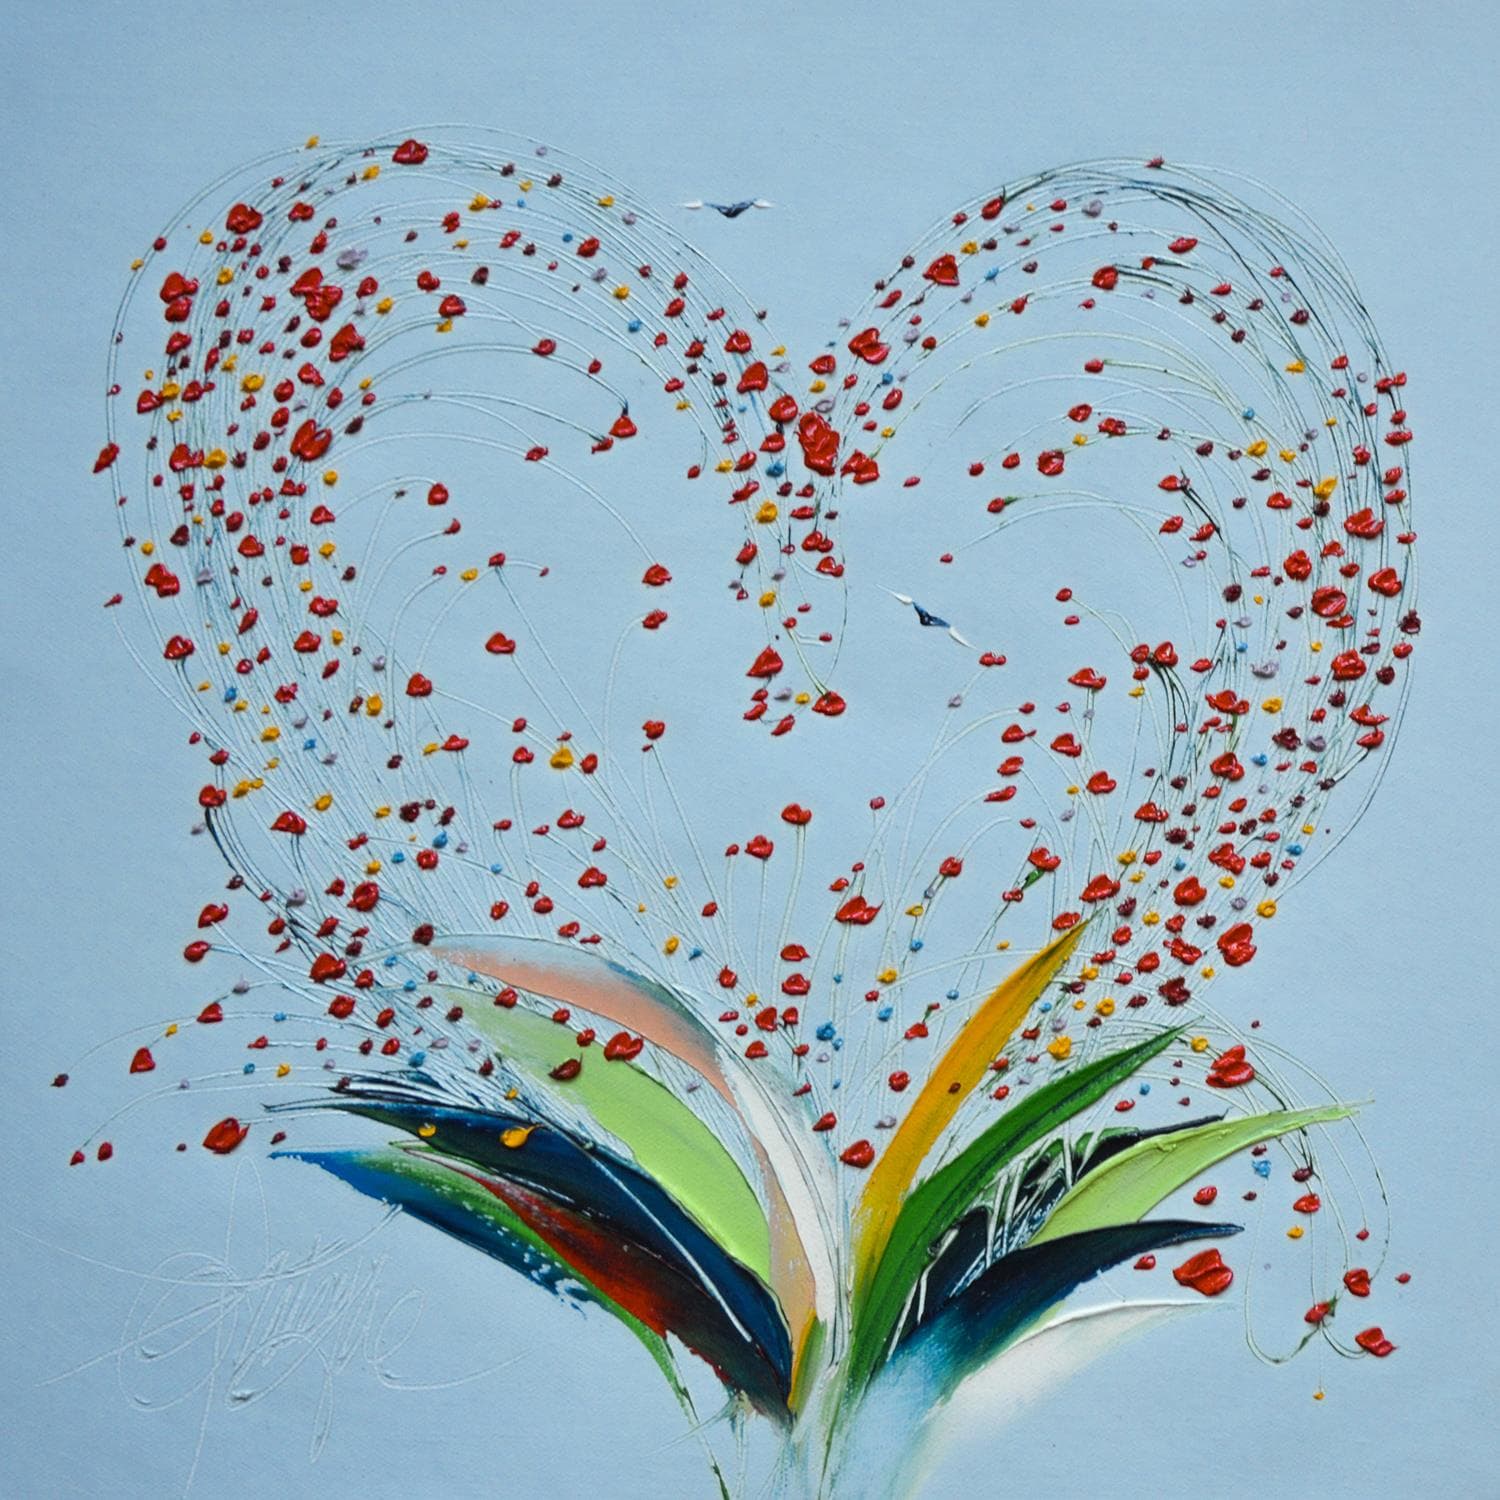 Small Paintings Sur Le Coeur Mon Amour By Fonteyne David Carre D Artistes